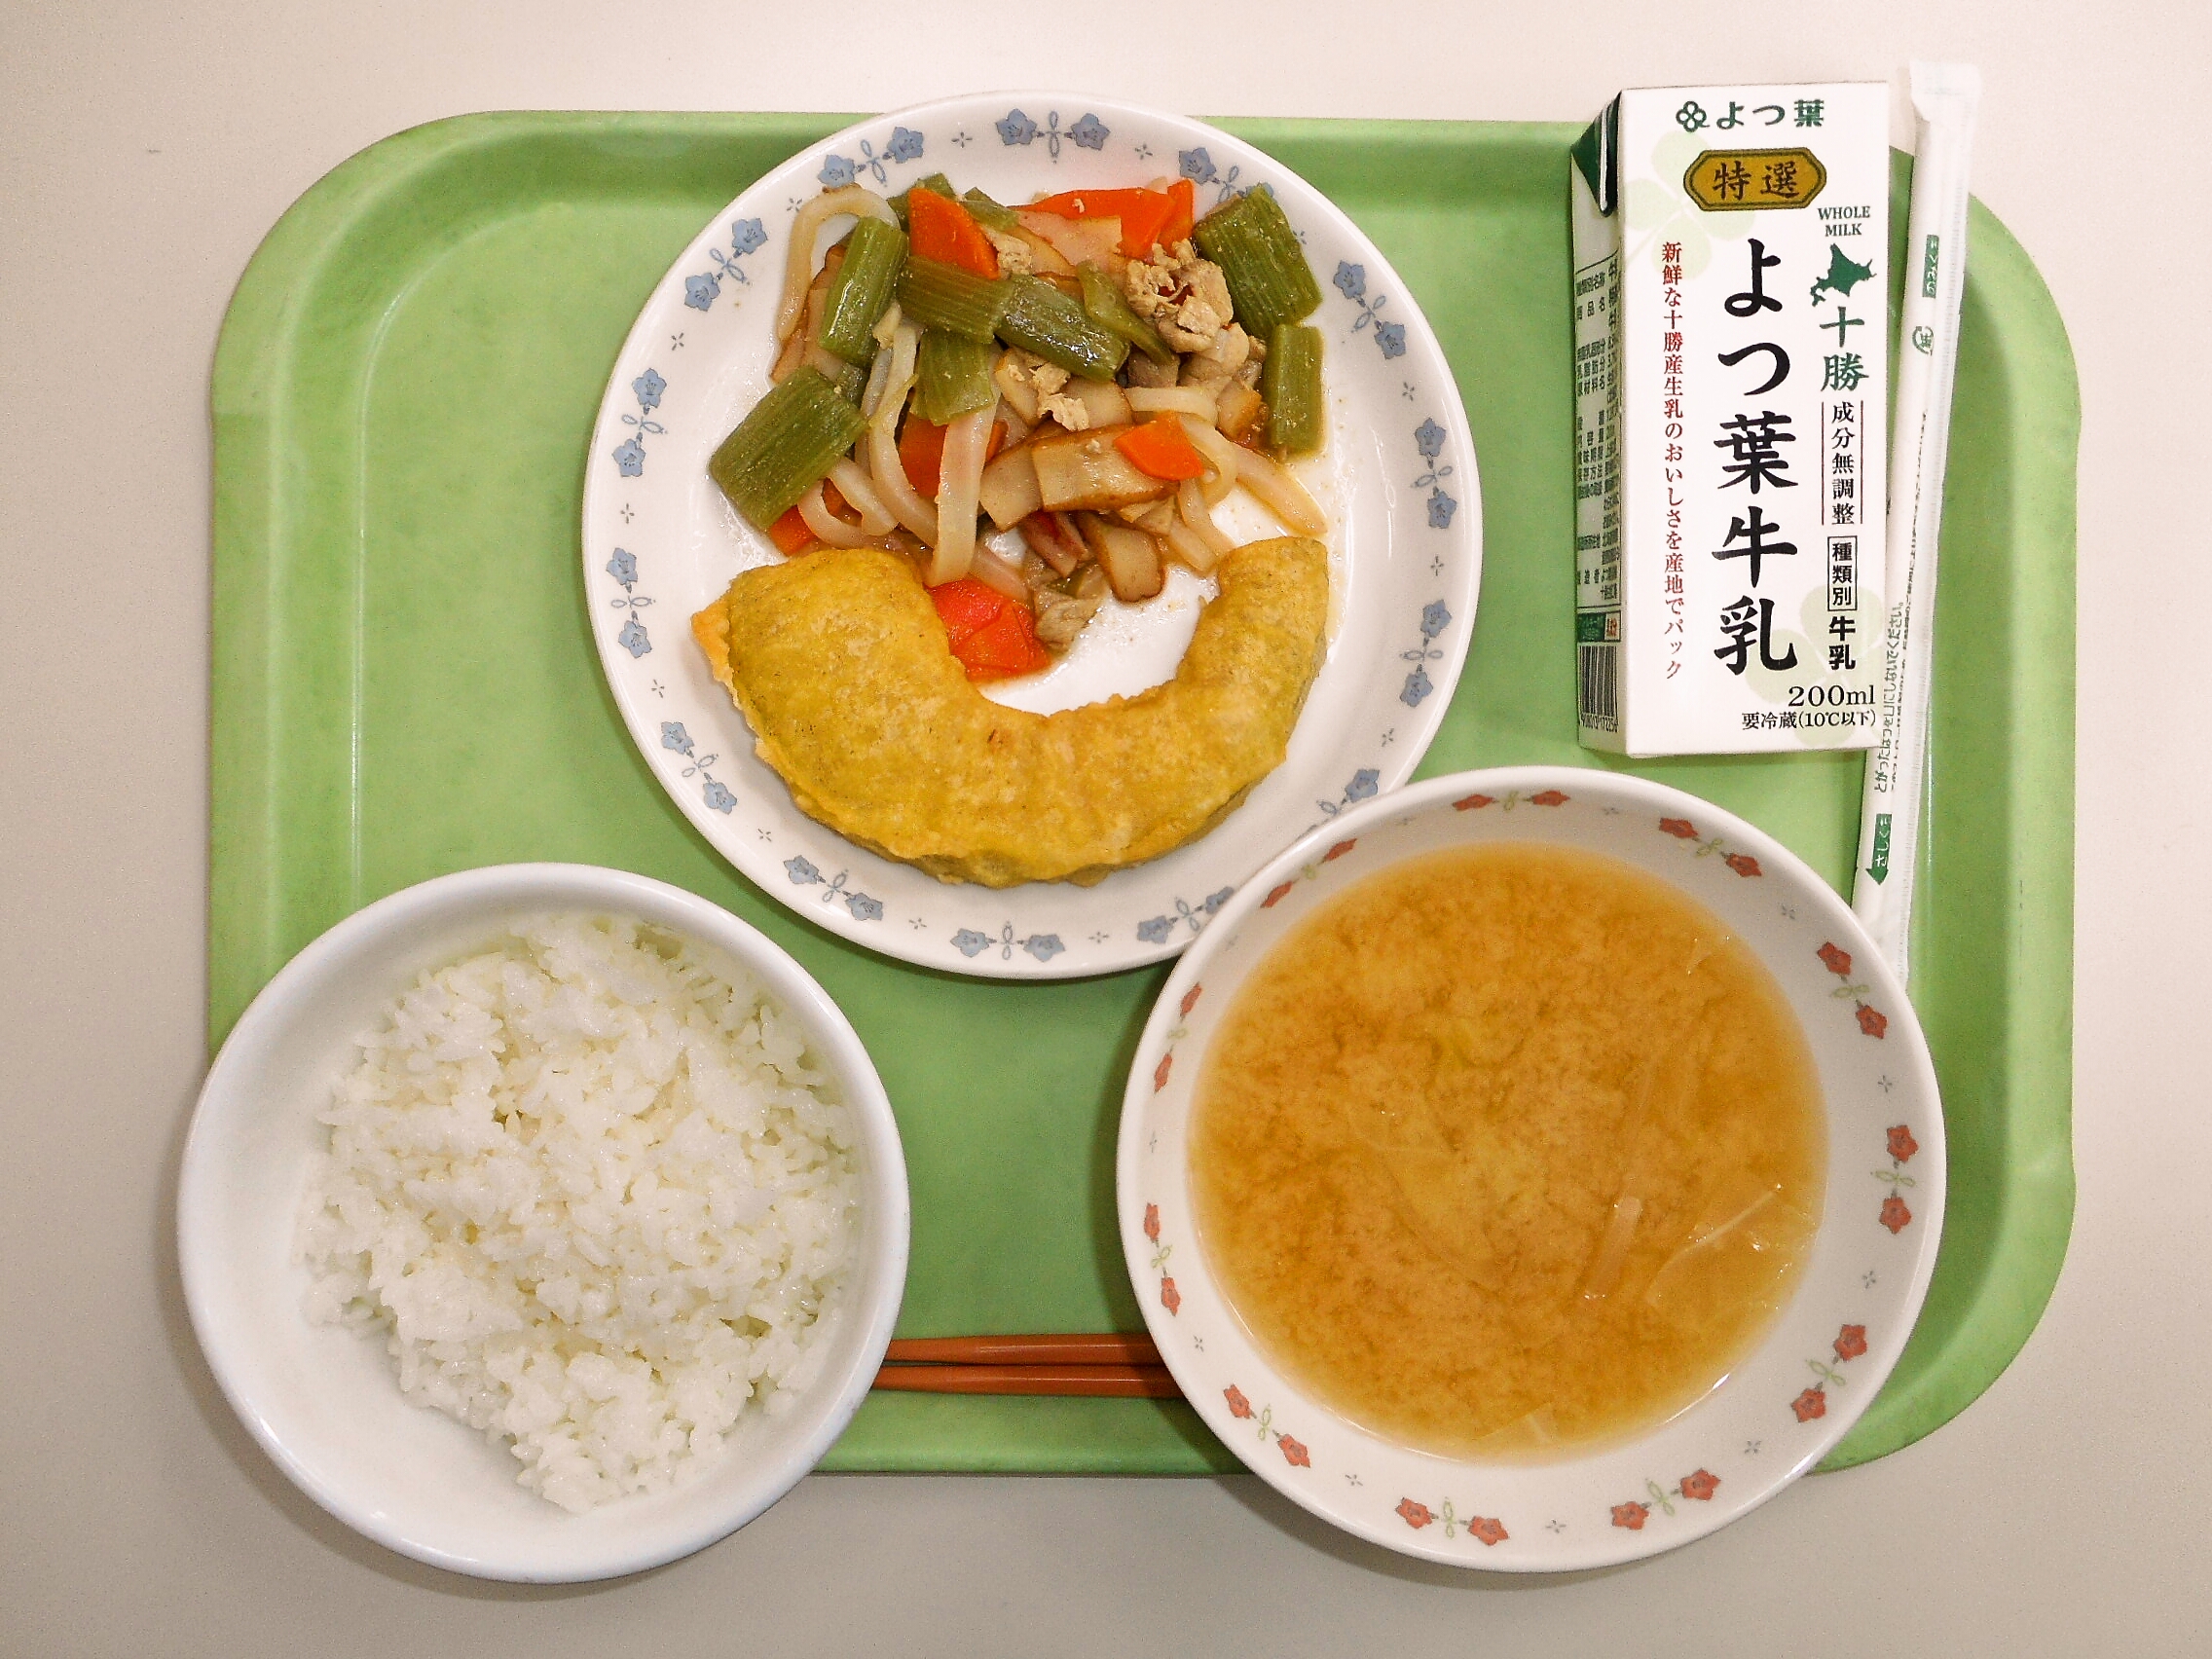 ごはん、みそ汁（きゃべつ・たまねぎ）、かぼちゃ天ぷら、ふきの五目煮、牛乳